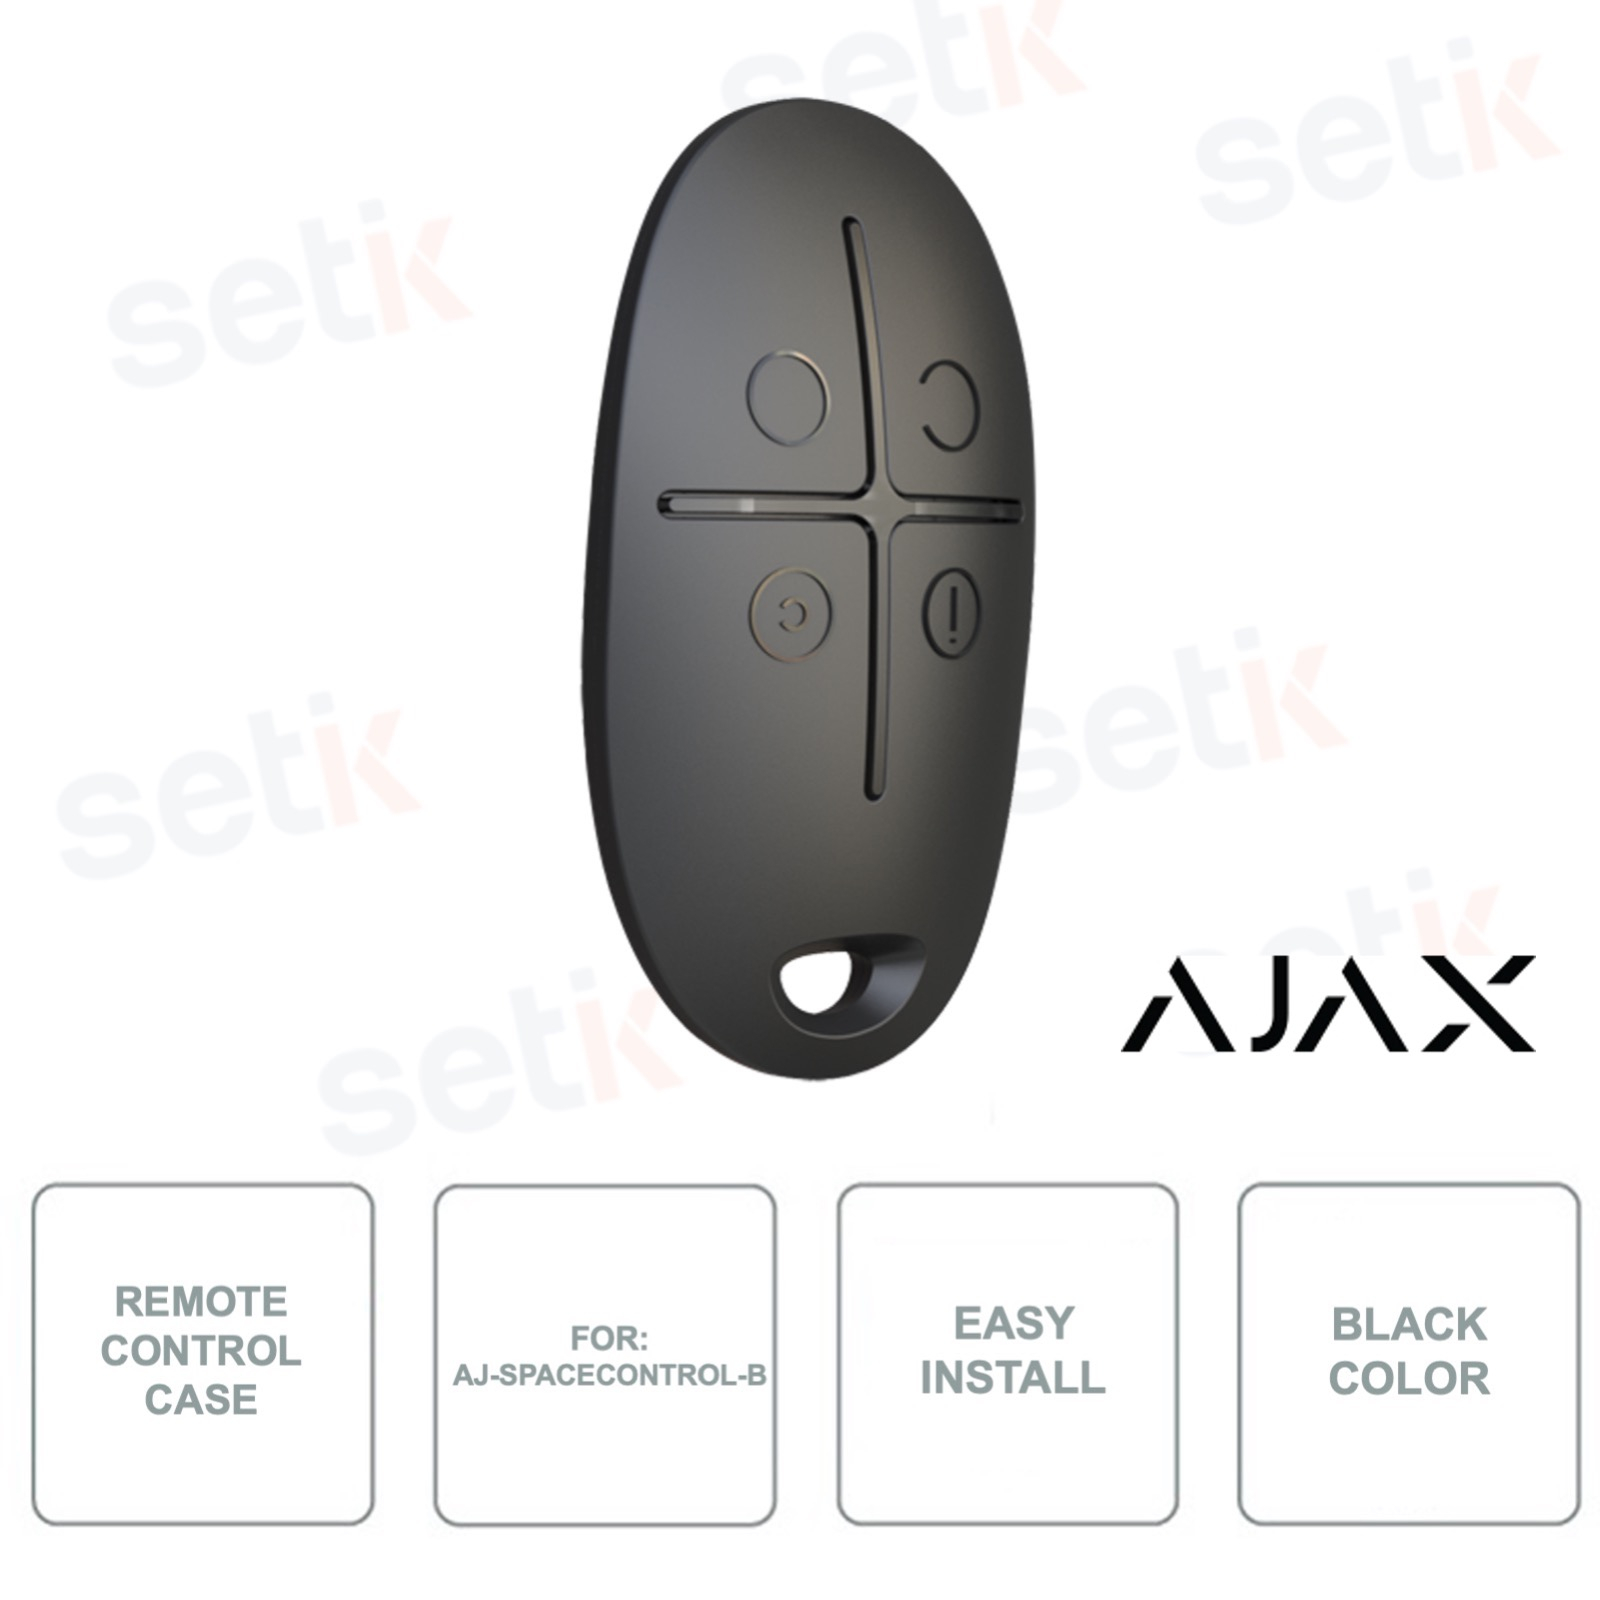 Mando inalámbrico para soluciones de alarma AJAX color negro